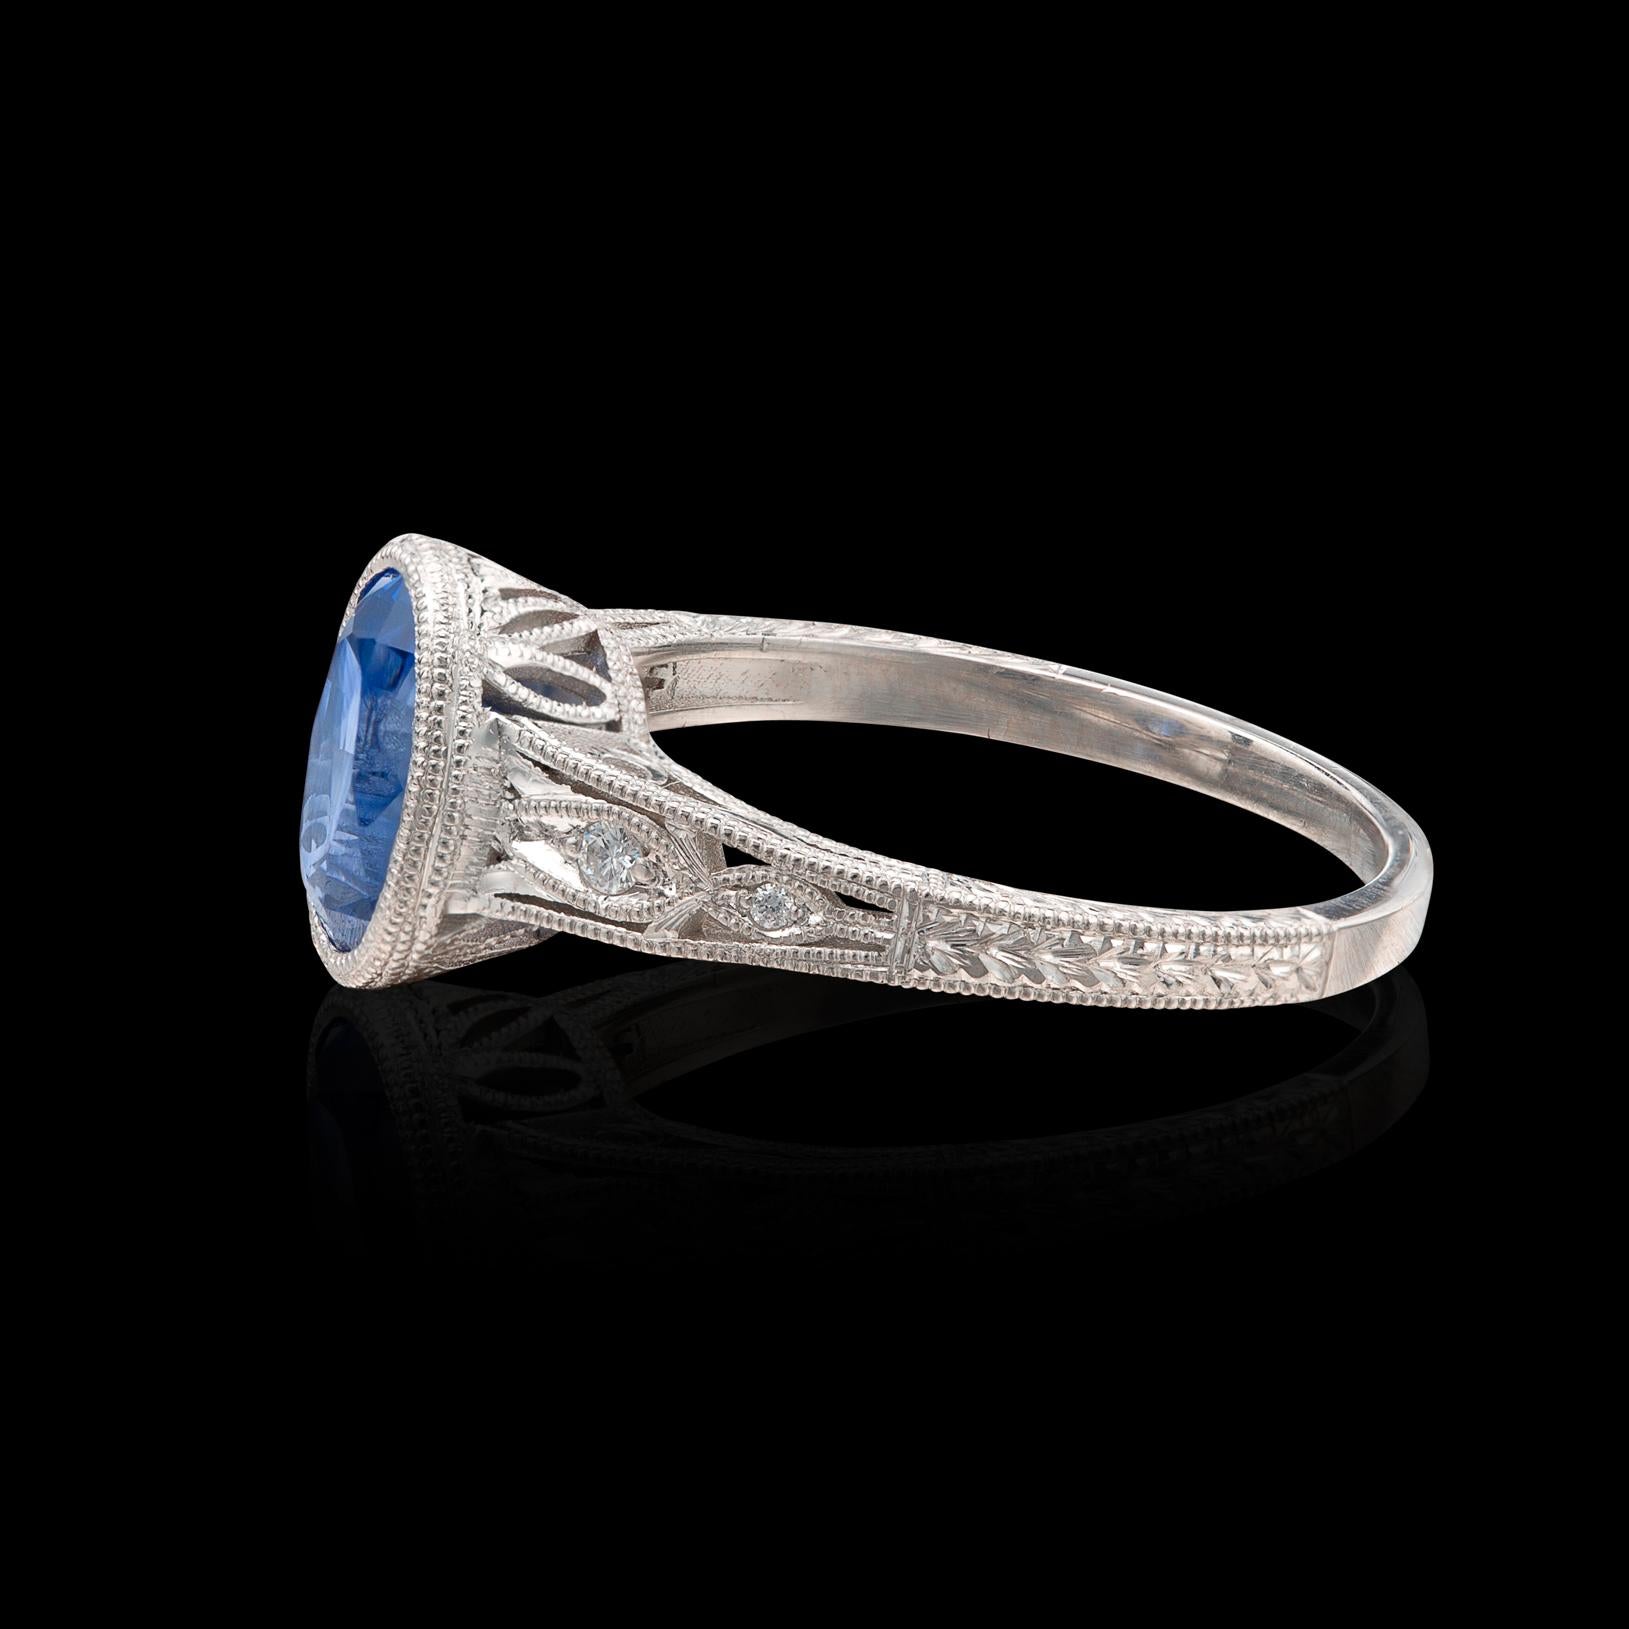 Oval Cut Ceylon Sapphire, Diamond & Platinum Ring